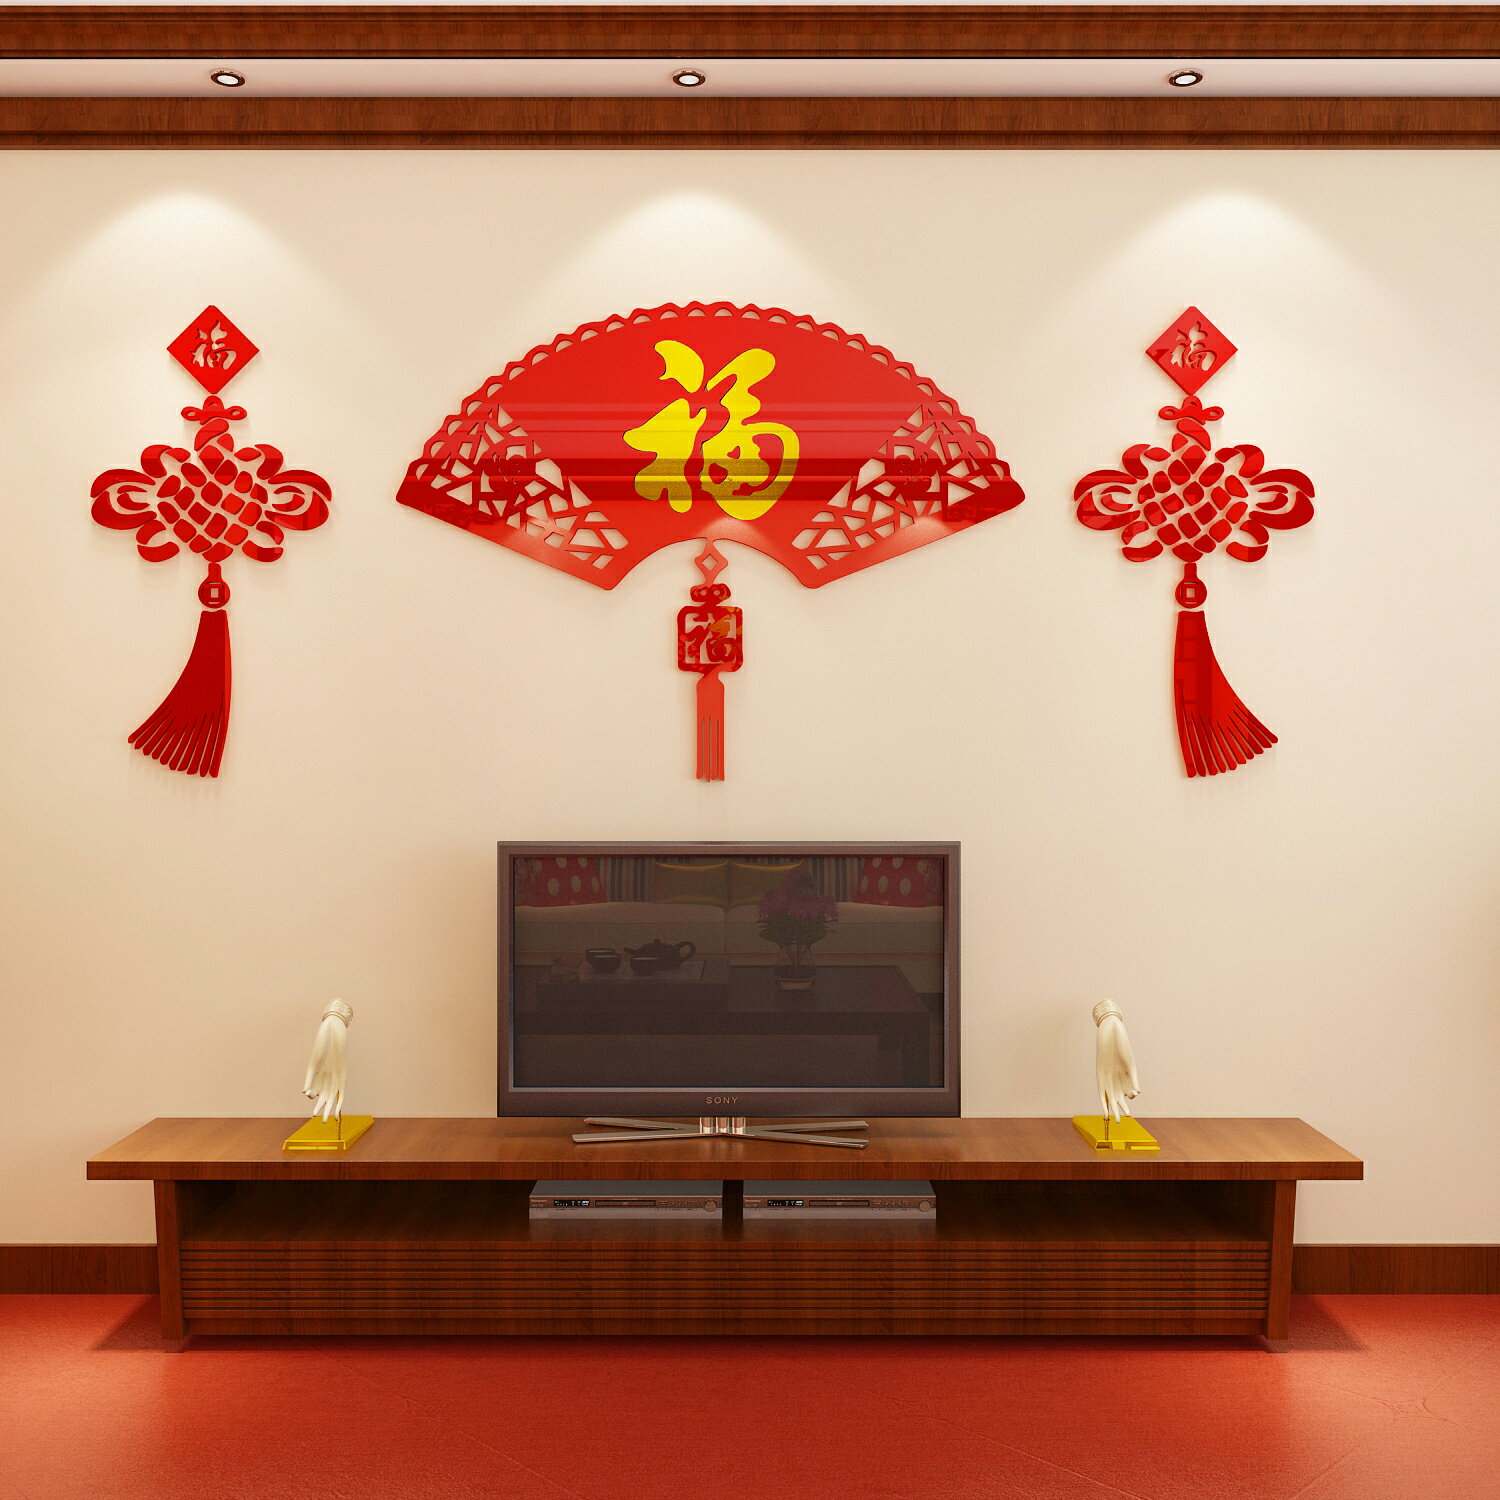 新年客廳裝飾3d立體電視墻亞克力貼畫福字扇房間玄關墻貼壁紙中式